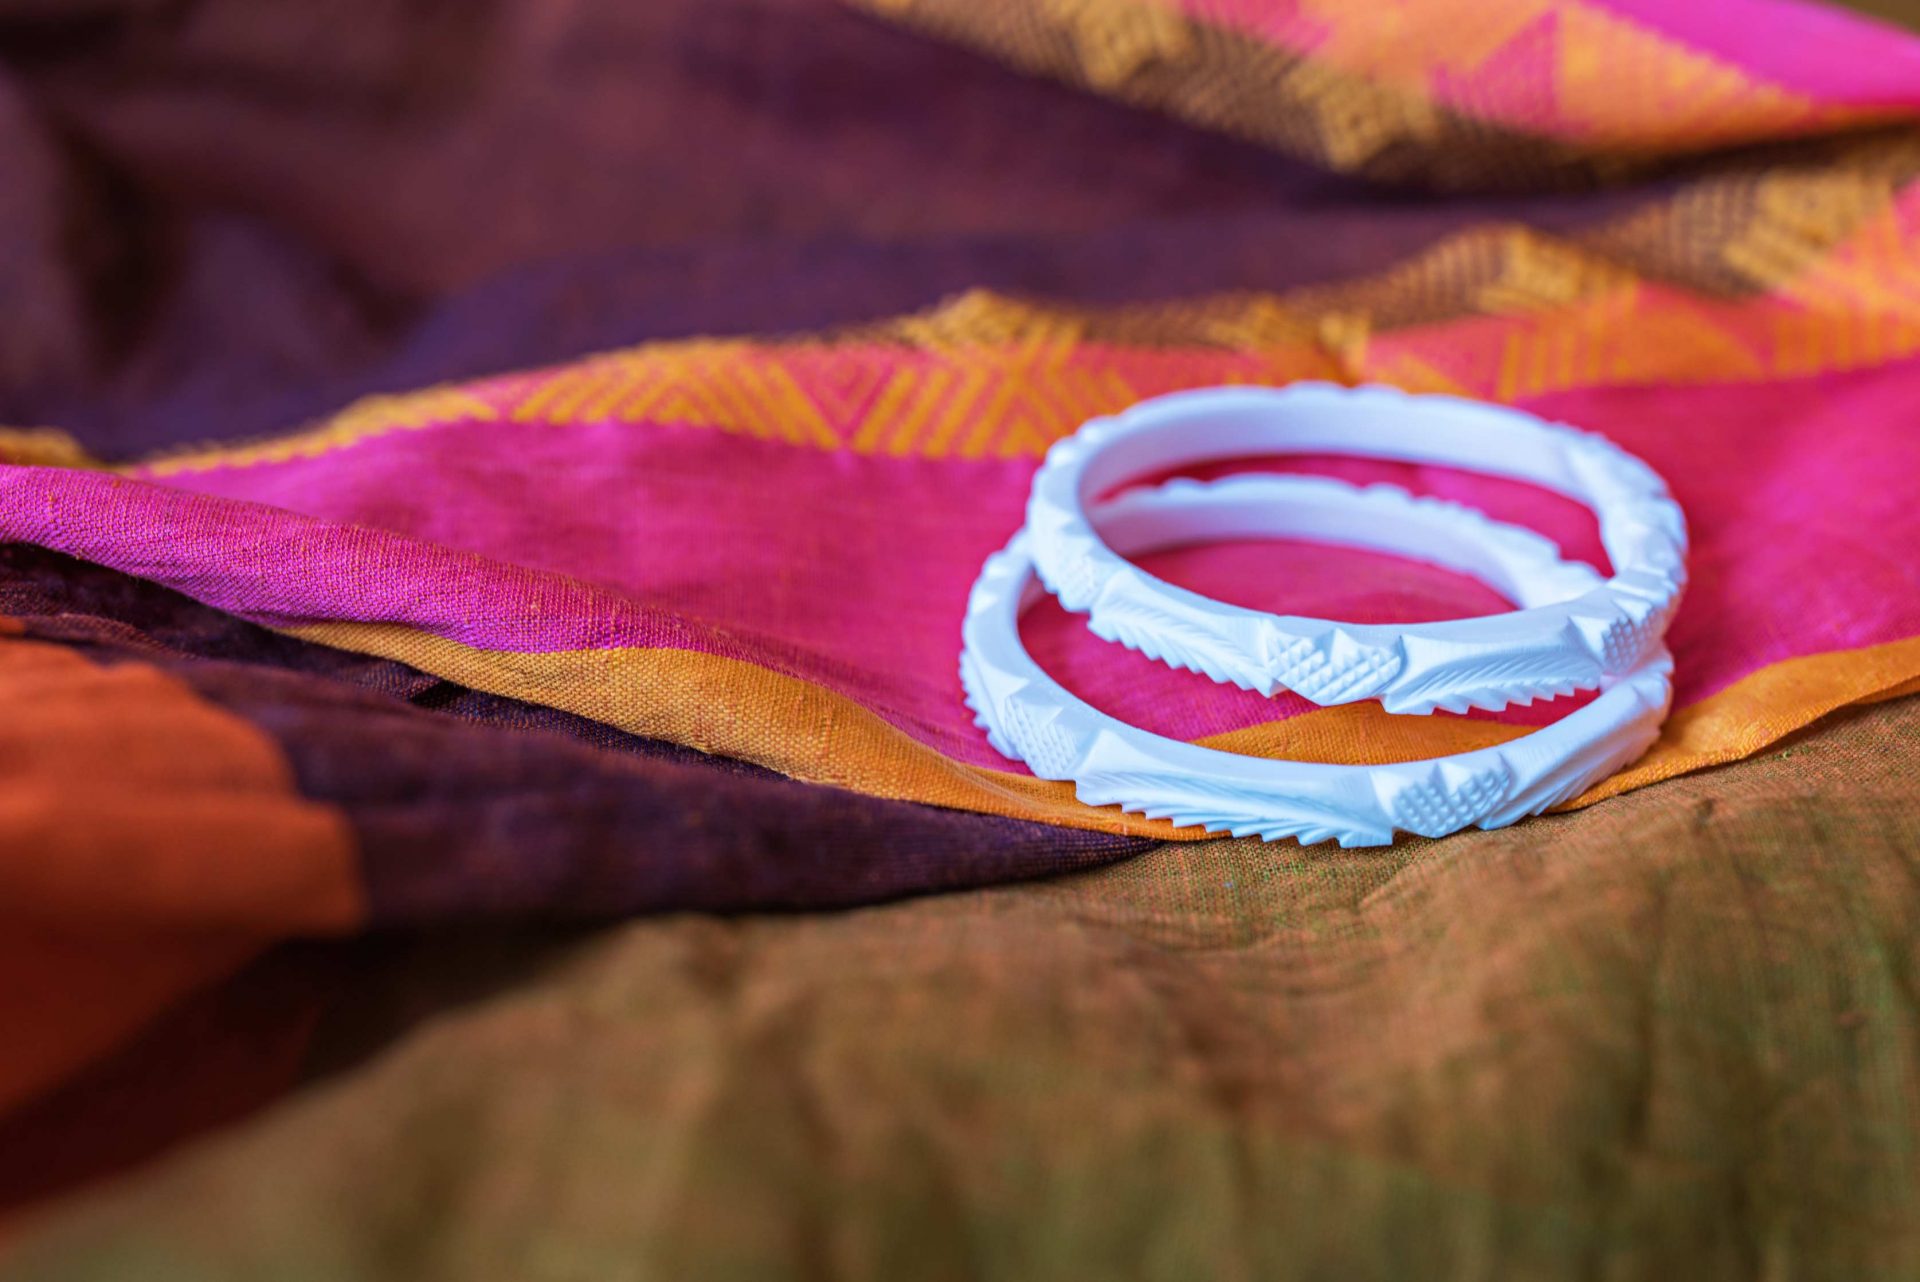 una coppia di bracciali shakha, i tipici gioielli indossati dalle spose nella loro vita coniugale